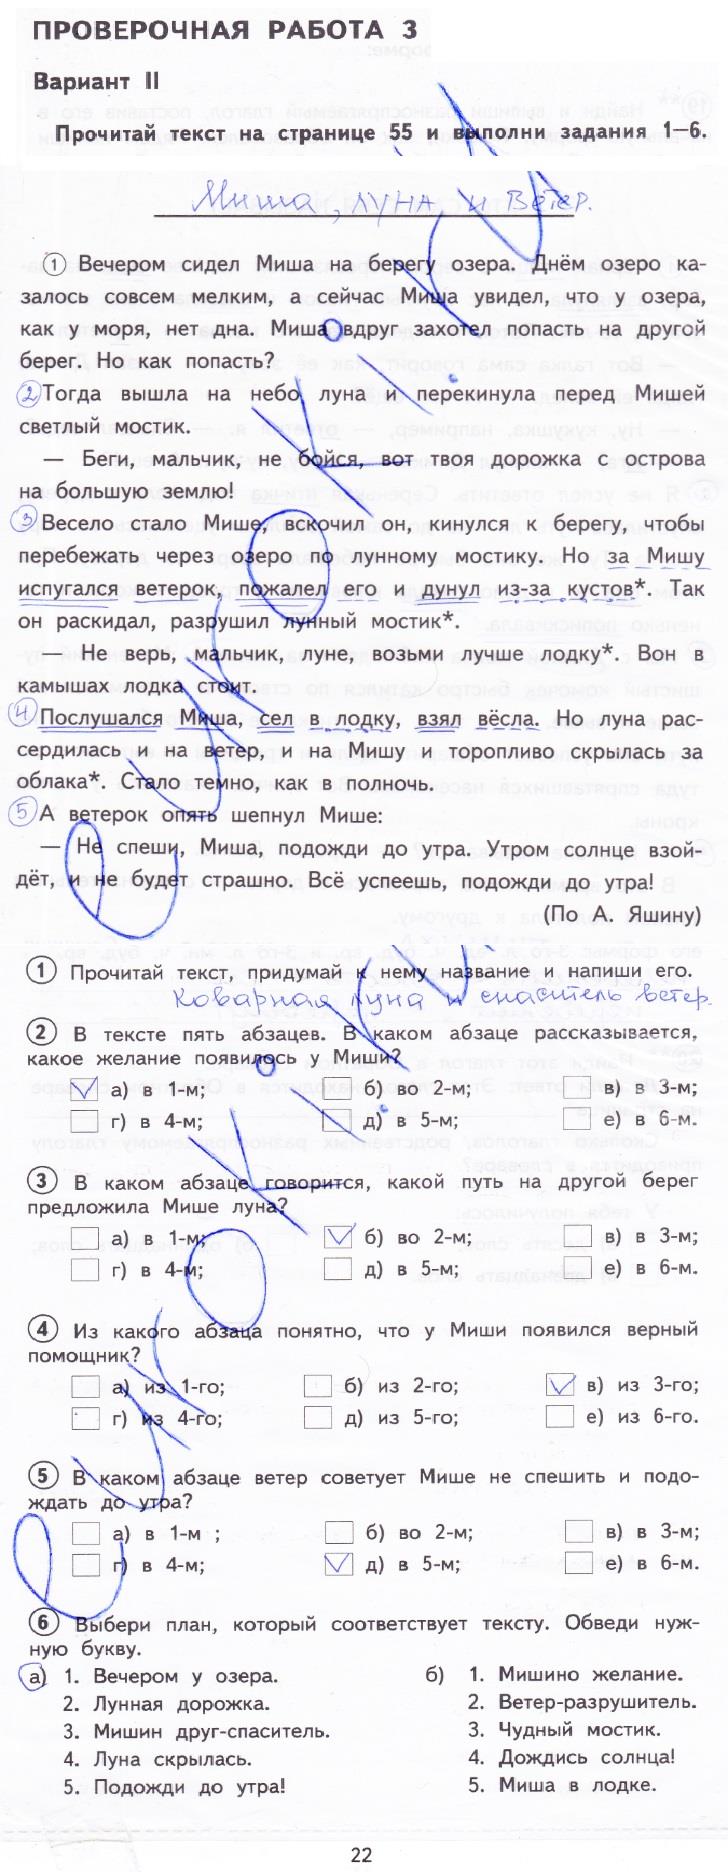 гдз 4 класс тетрадь для проверочных работ страница 18 русский язык Лаврова